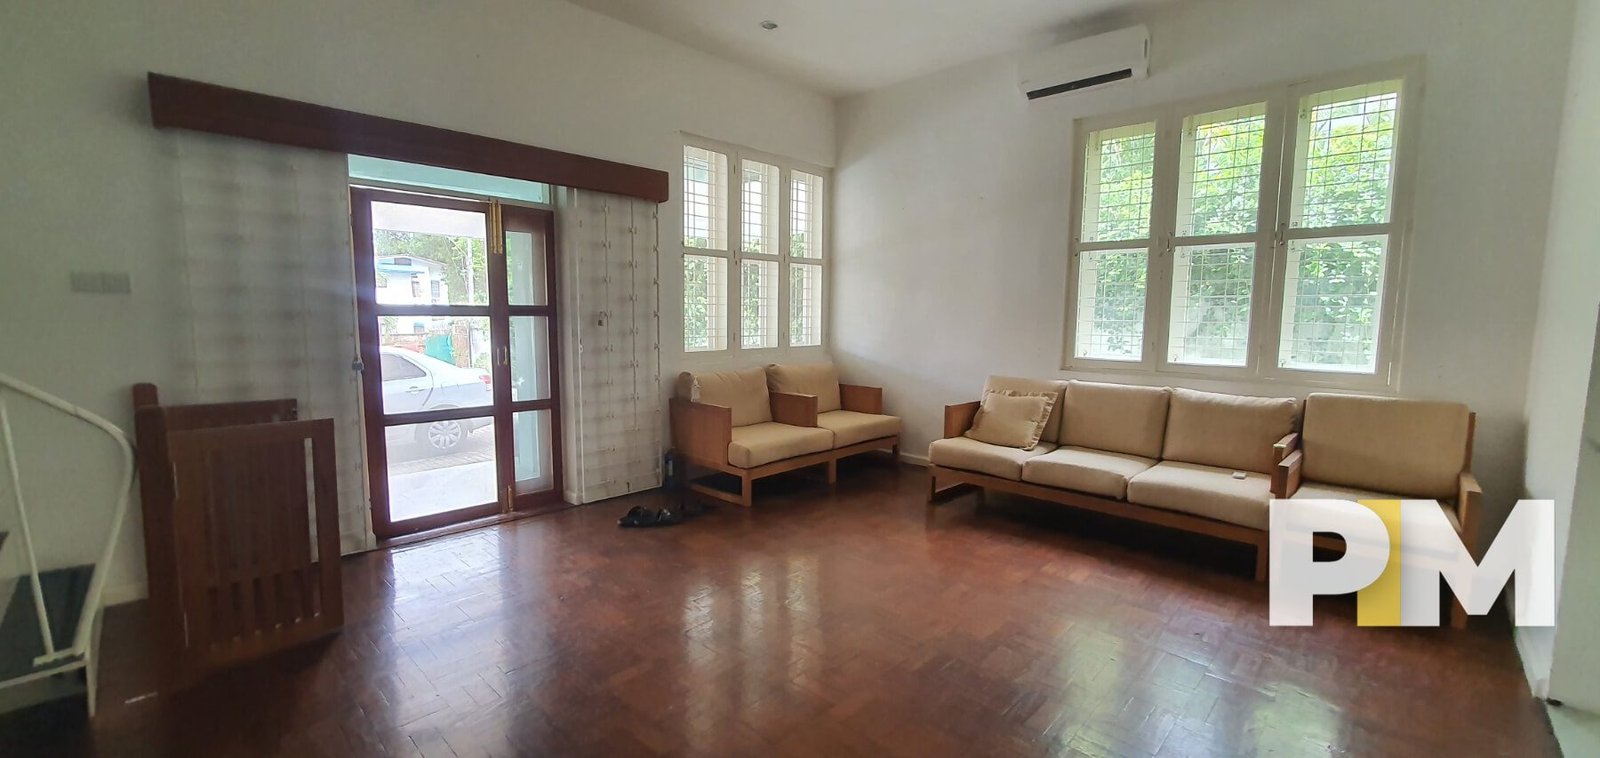 Living Room with sofa set - Yangon Real Estate